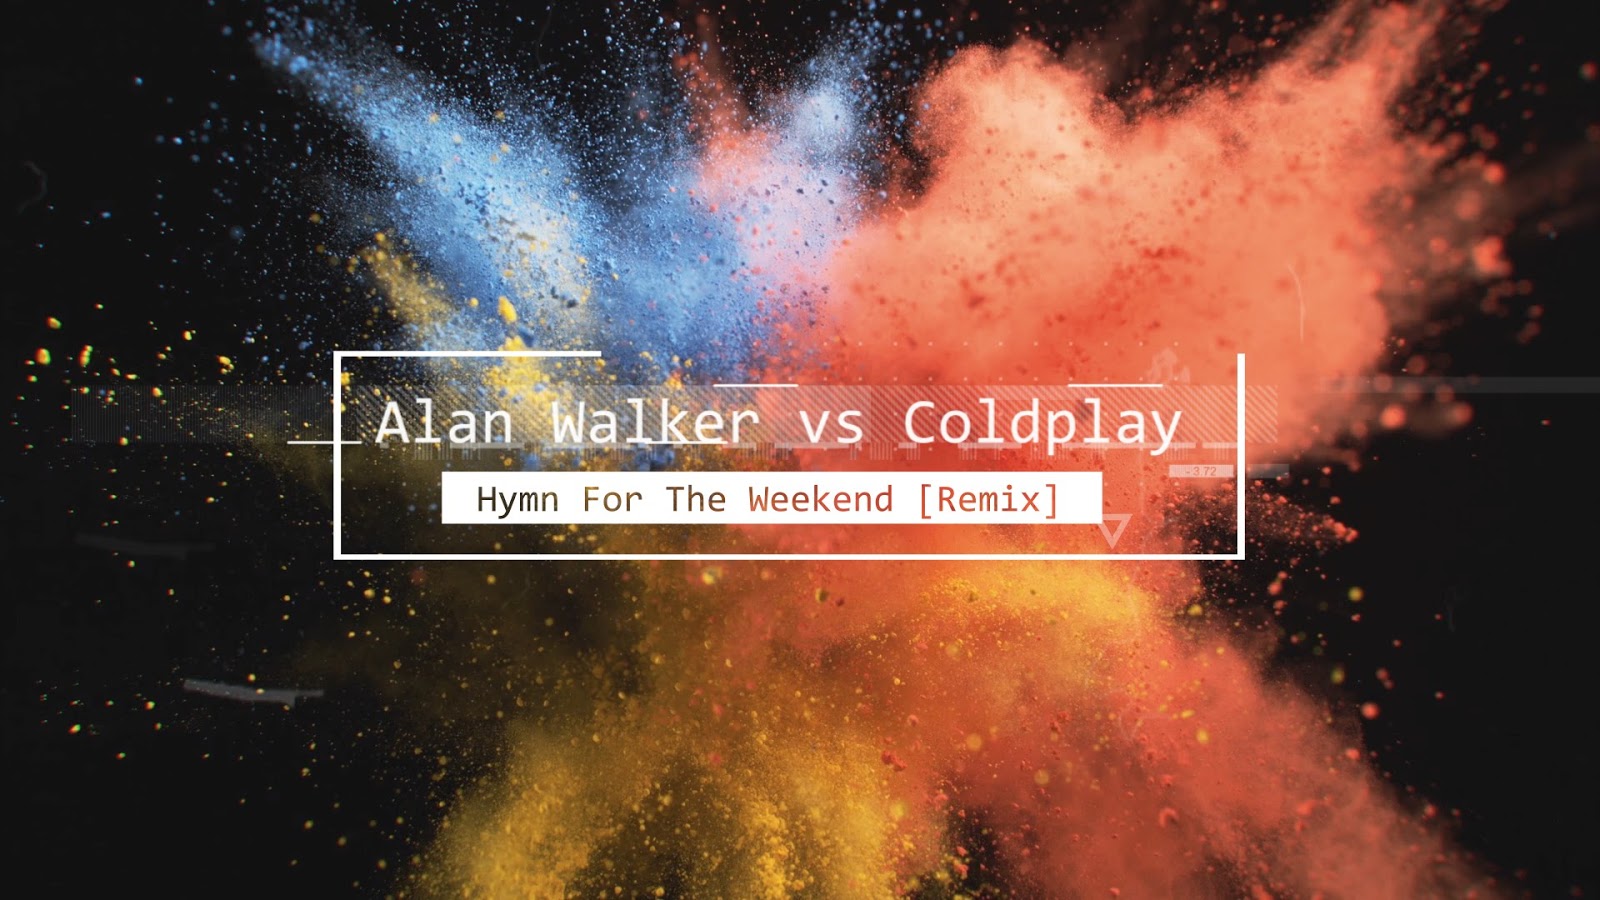 Alan walker weekend. Coldplay Hymn for the. Hymn for the weekend alan Walker Remix. Alan Walker vs Coldplay. Coldplay Hymn for the weekend Remix.